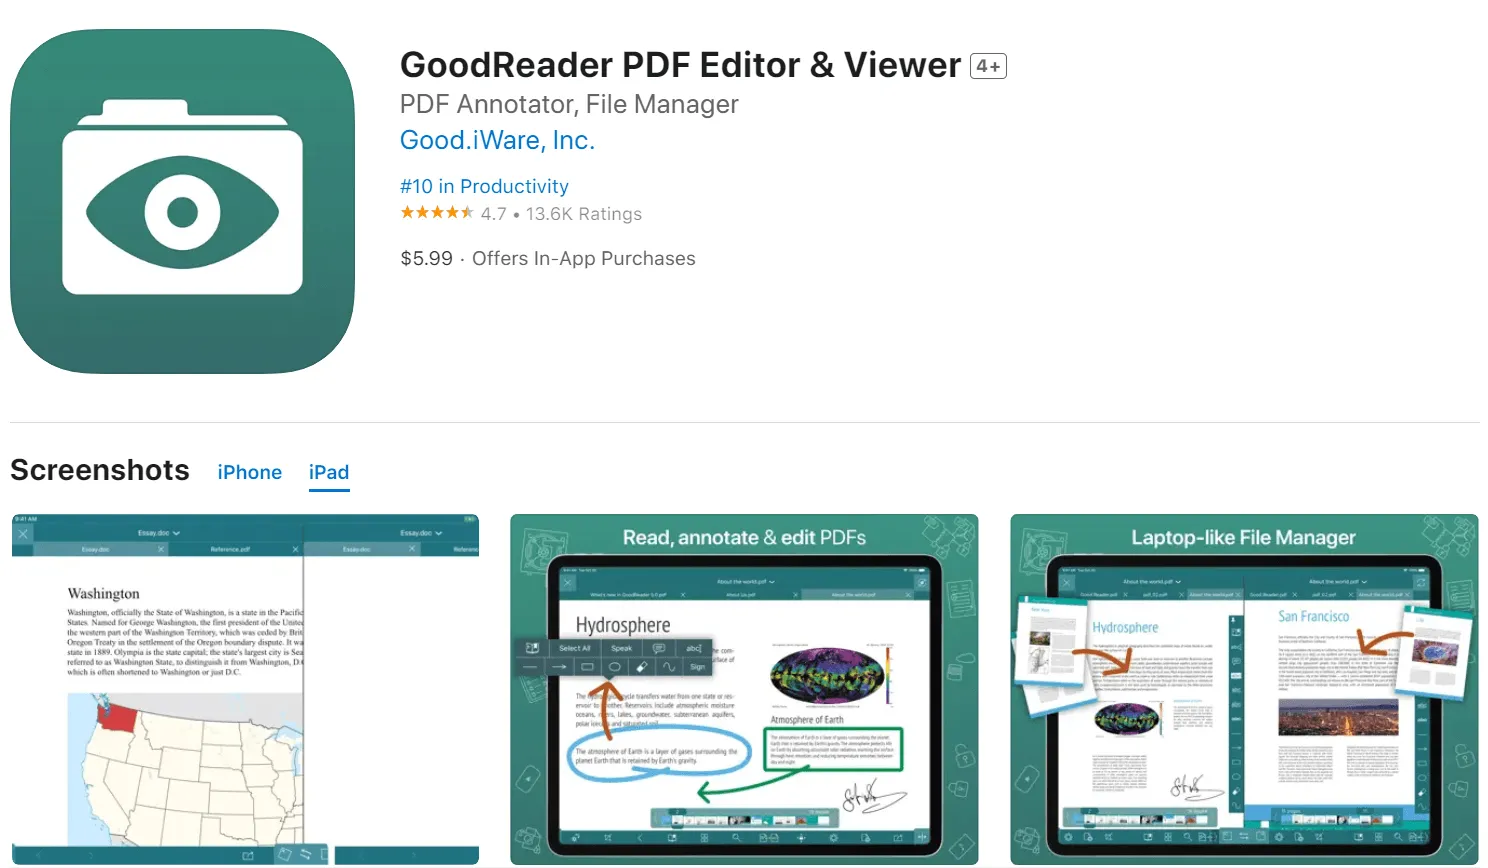 pdf viewer ipad goodreader for ipad